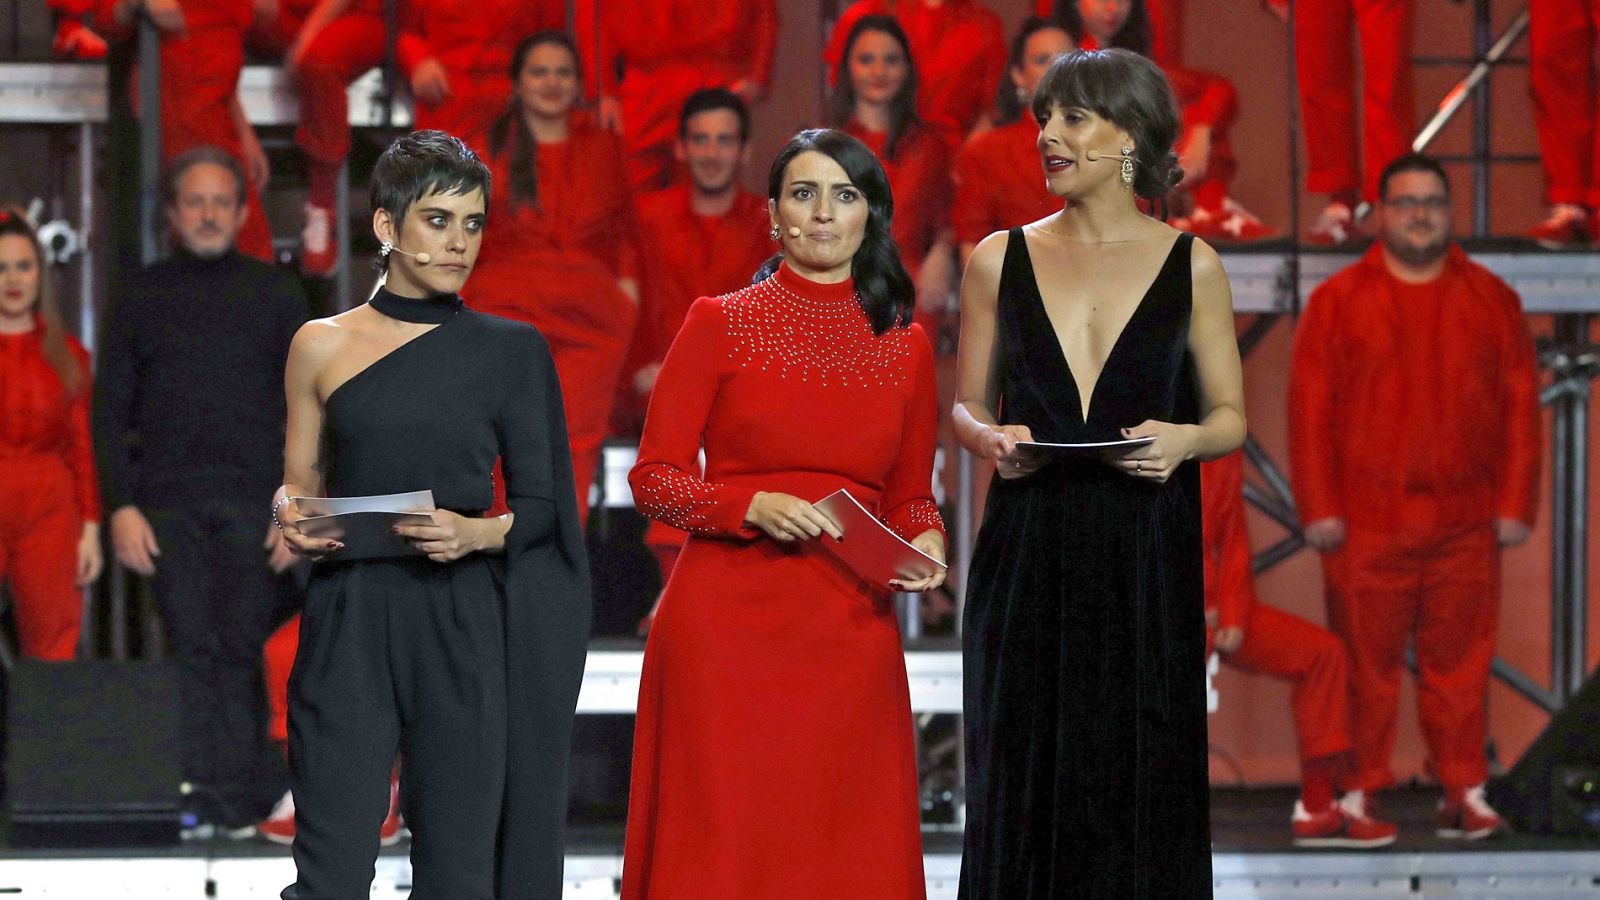 Goyas 2019: Silvia Abril, Belén Cuesta y María León hacen un llamamiento a romper con la "brecha salarial" en el cine - RTVE.es